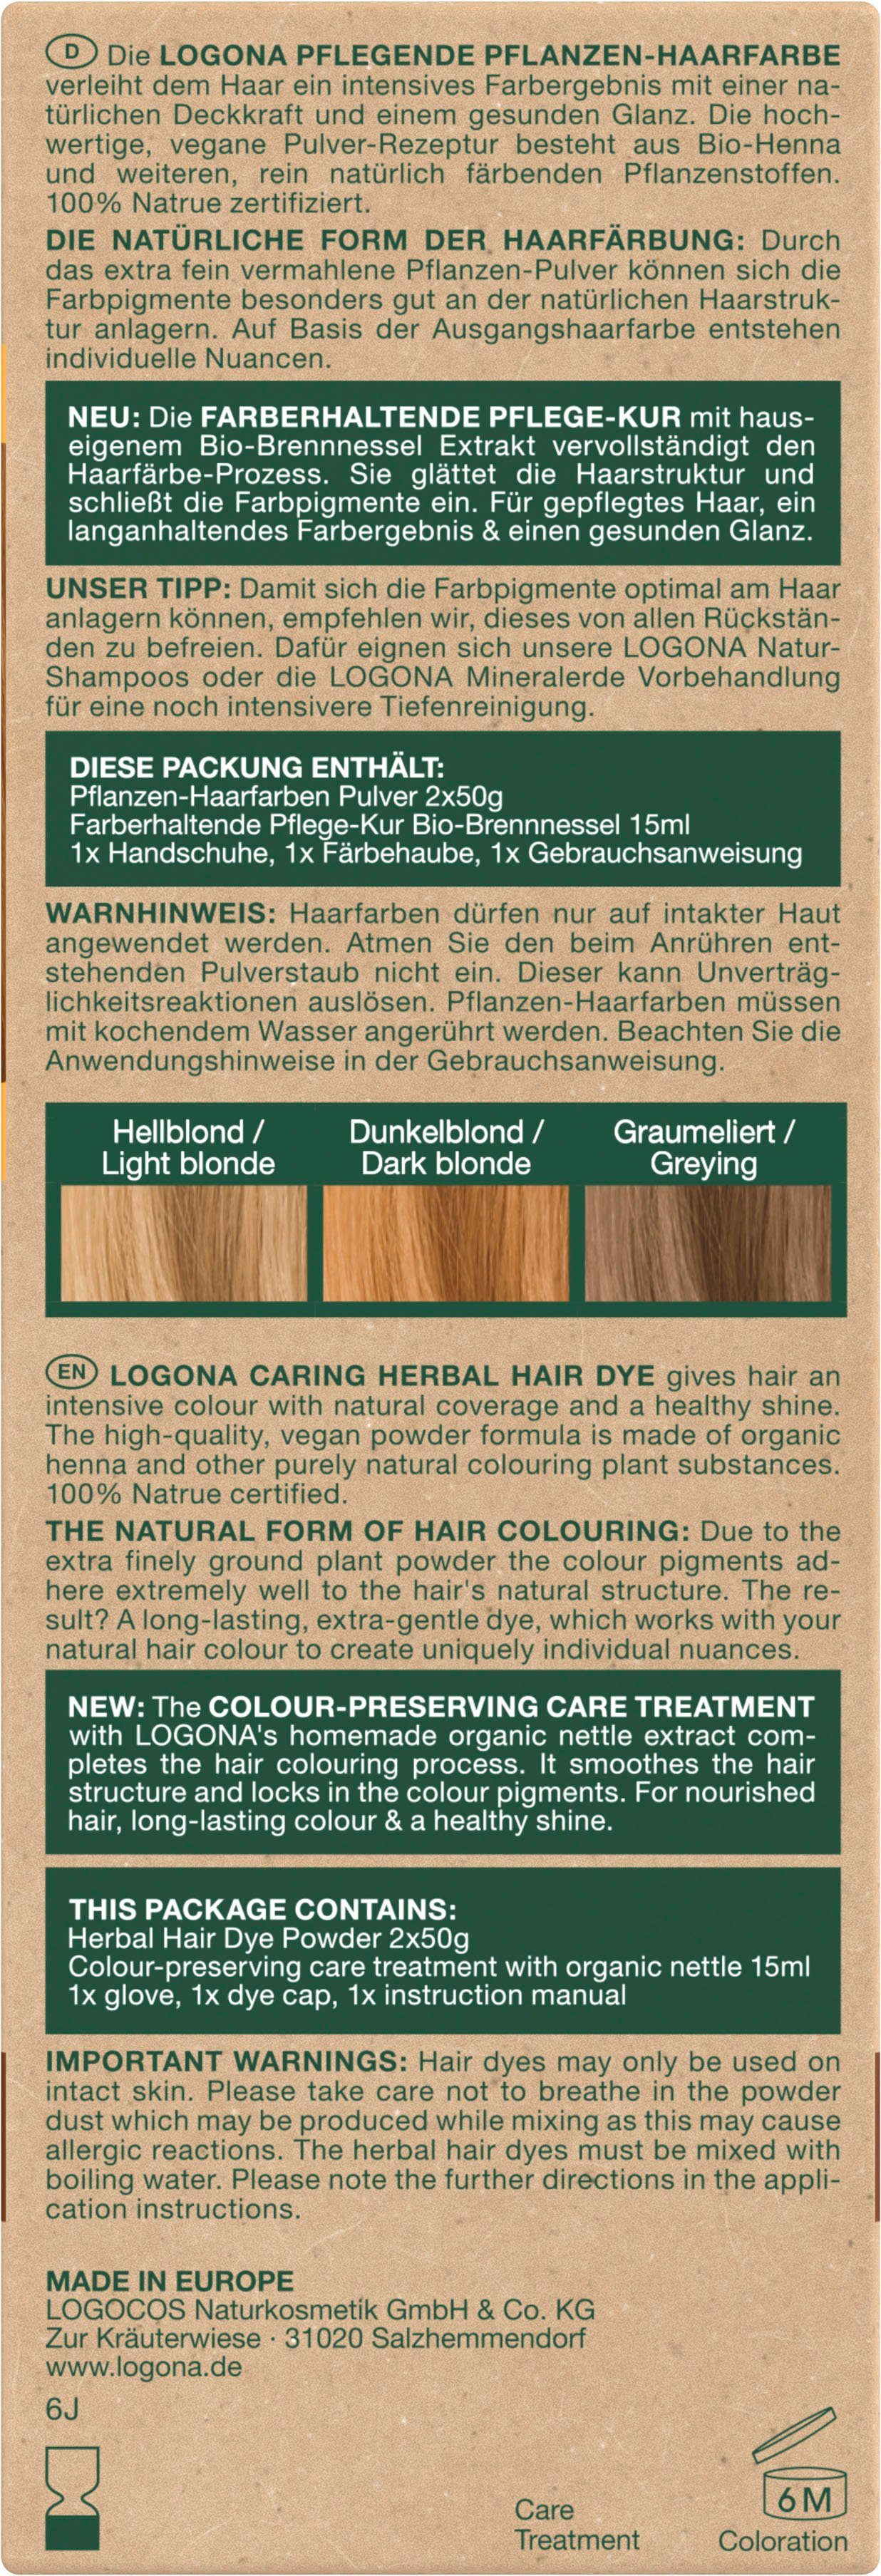 Pulver Kupferblond Haarfarbe 02 Pflanzen-Haarfarbe LOGONA